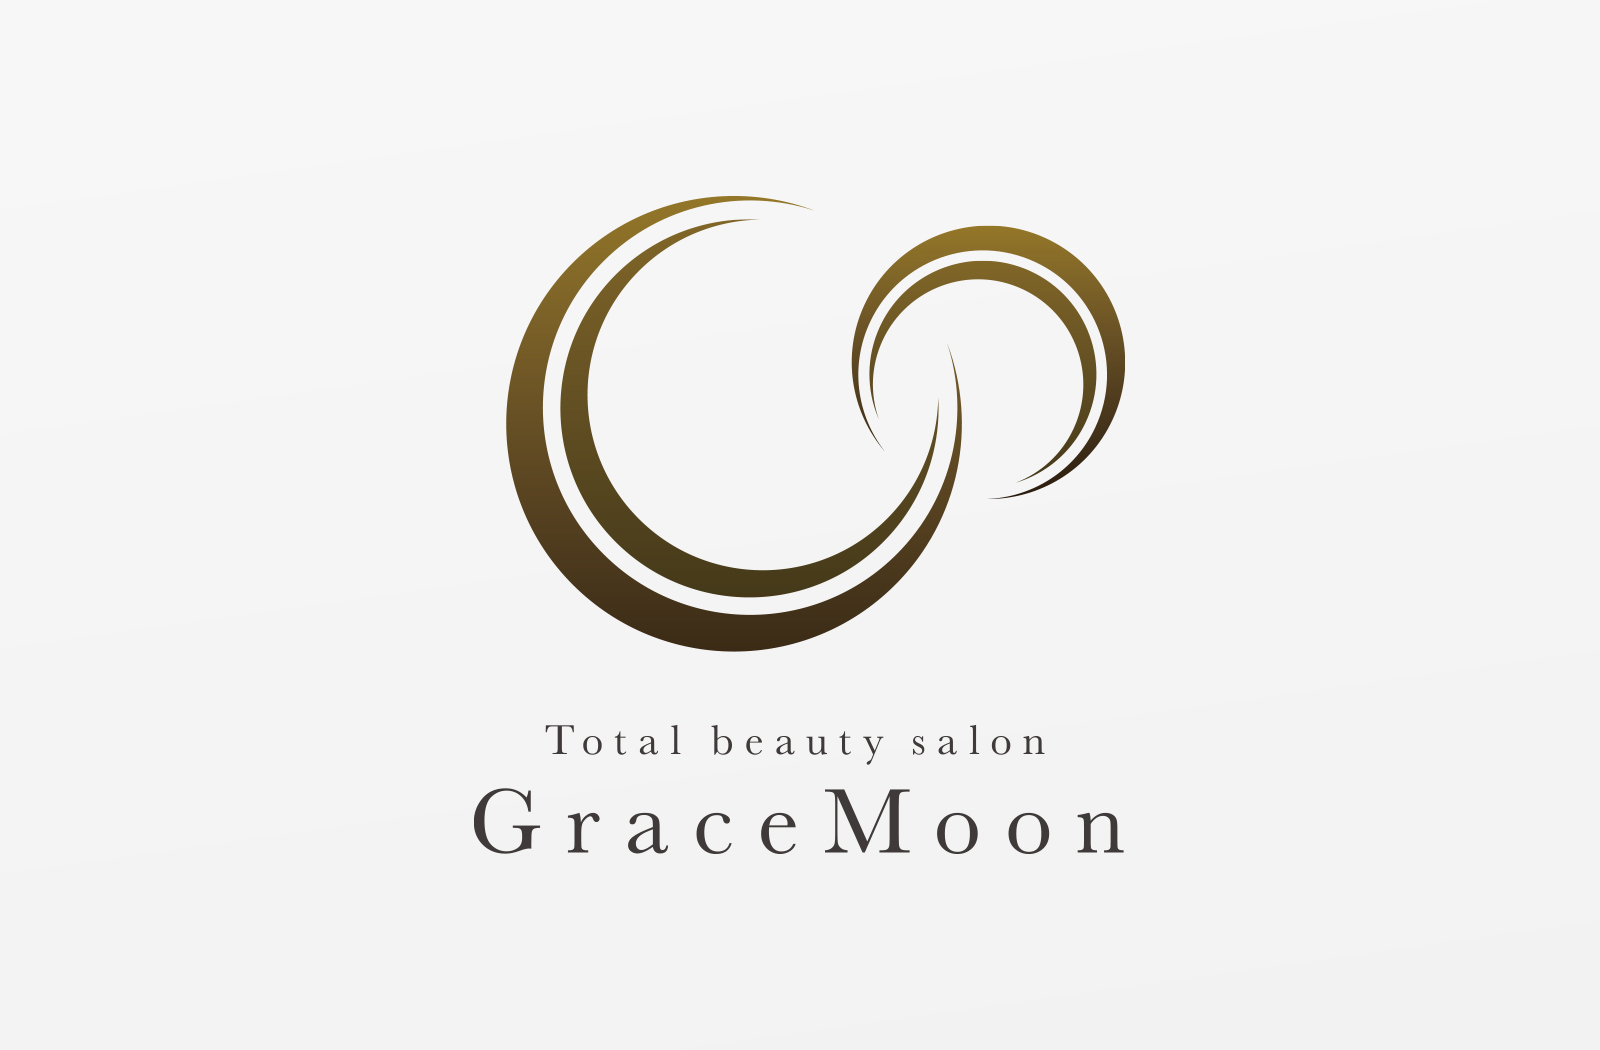 エステティック事業を展開されている「GraceMoon」様のロゴデザイン